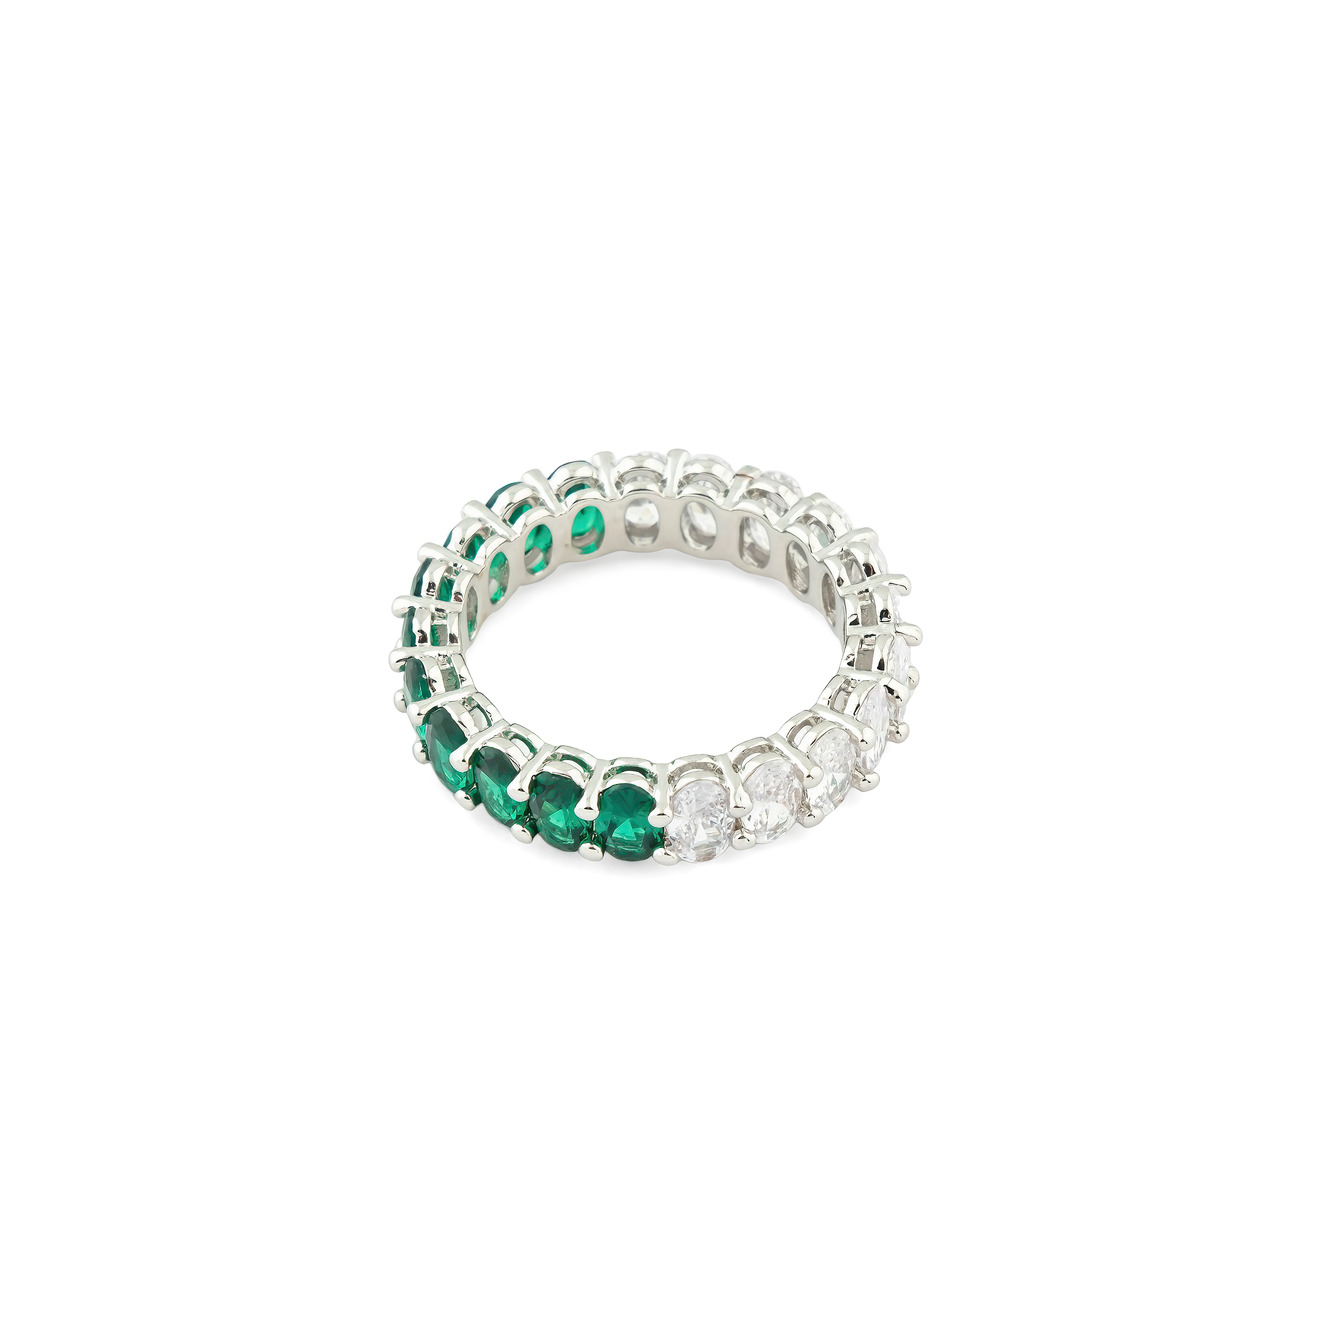 Herald Percy Серебристое кольцо с овалами белых и зеленых кристаллов lisa smith серебристое открытое кольцо с чёрным кабашоном и круглыми элементами